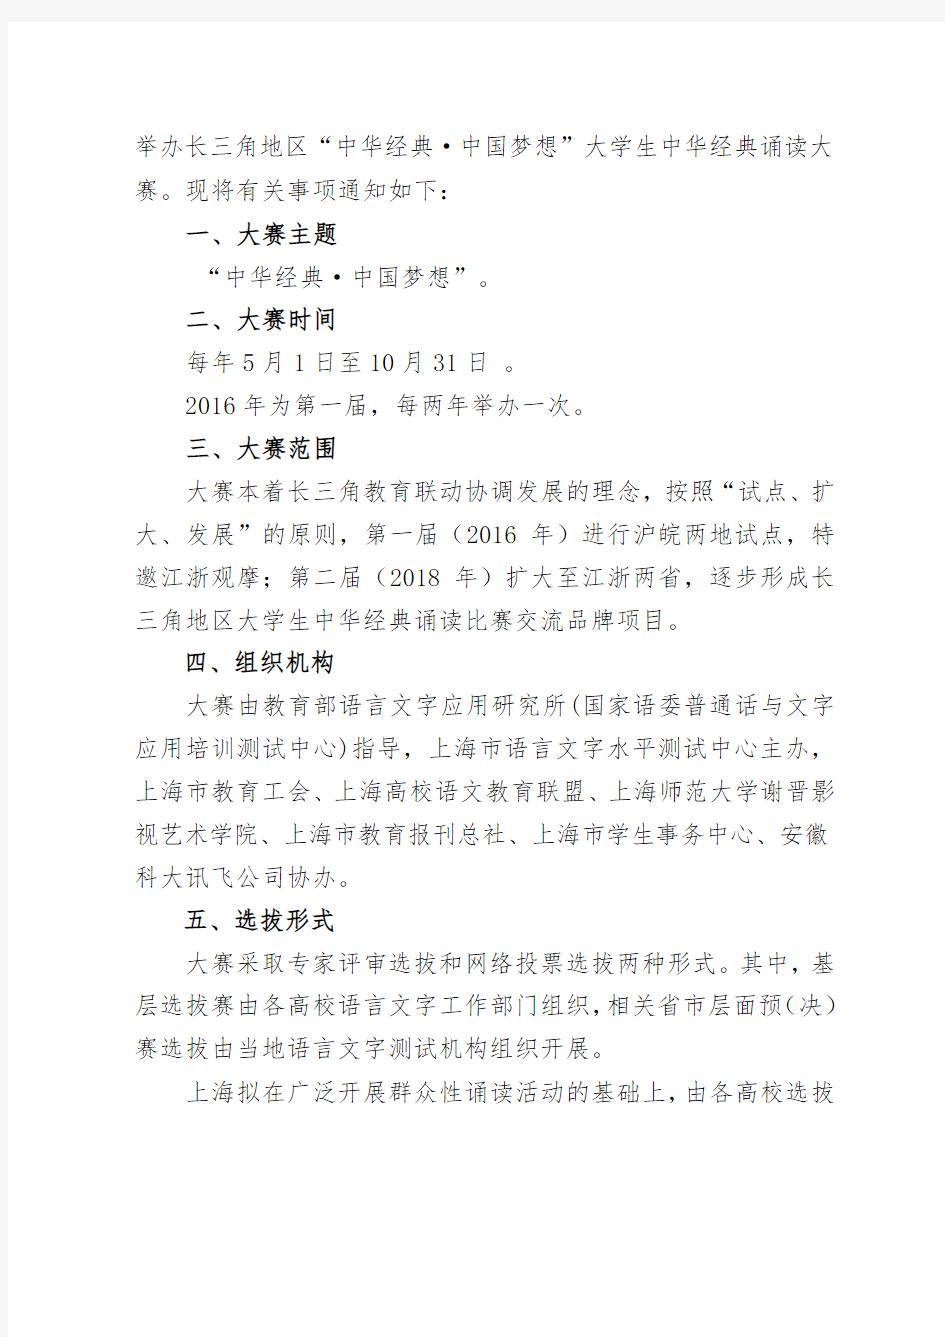 上海市语言文字水平测试中心